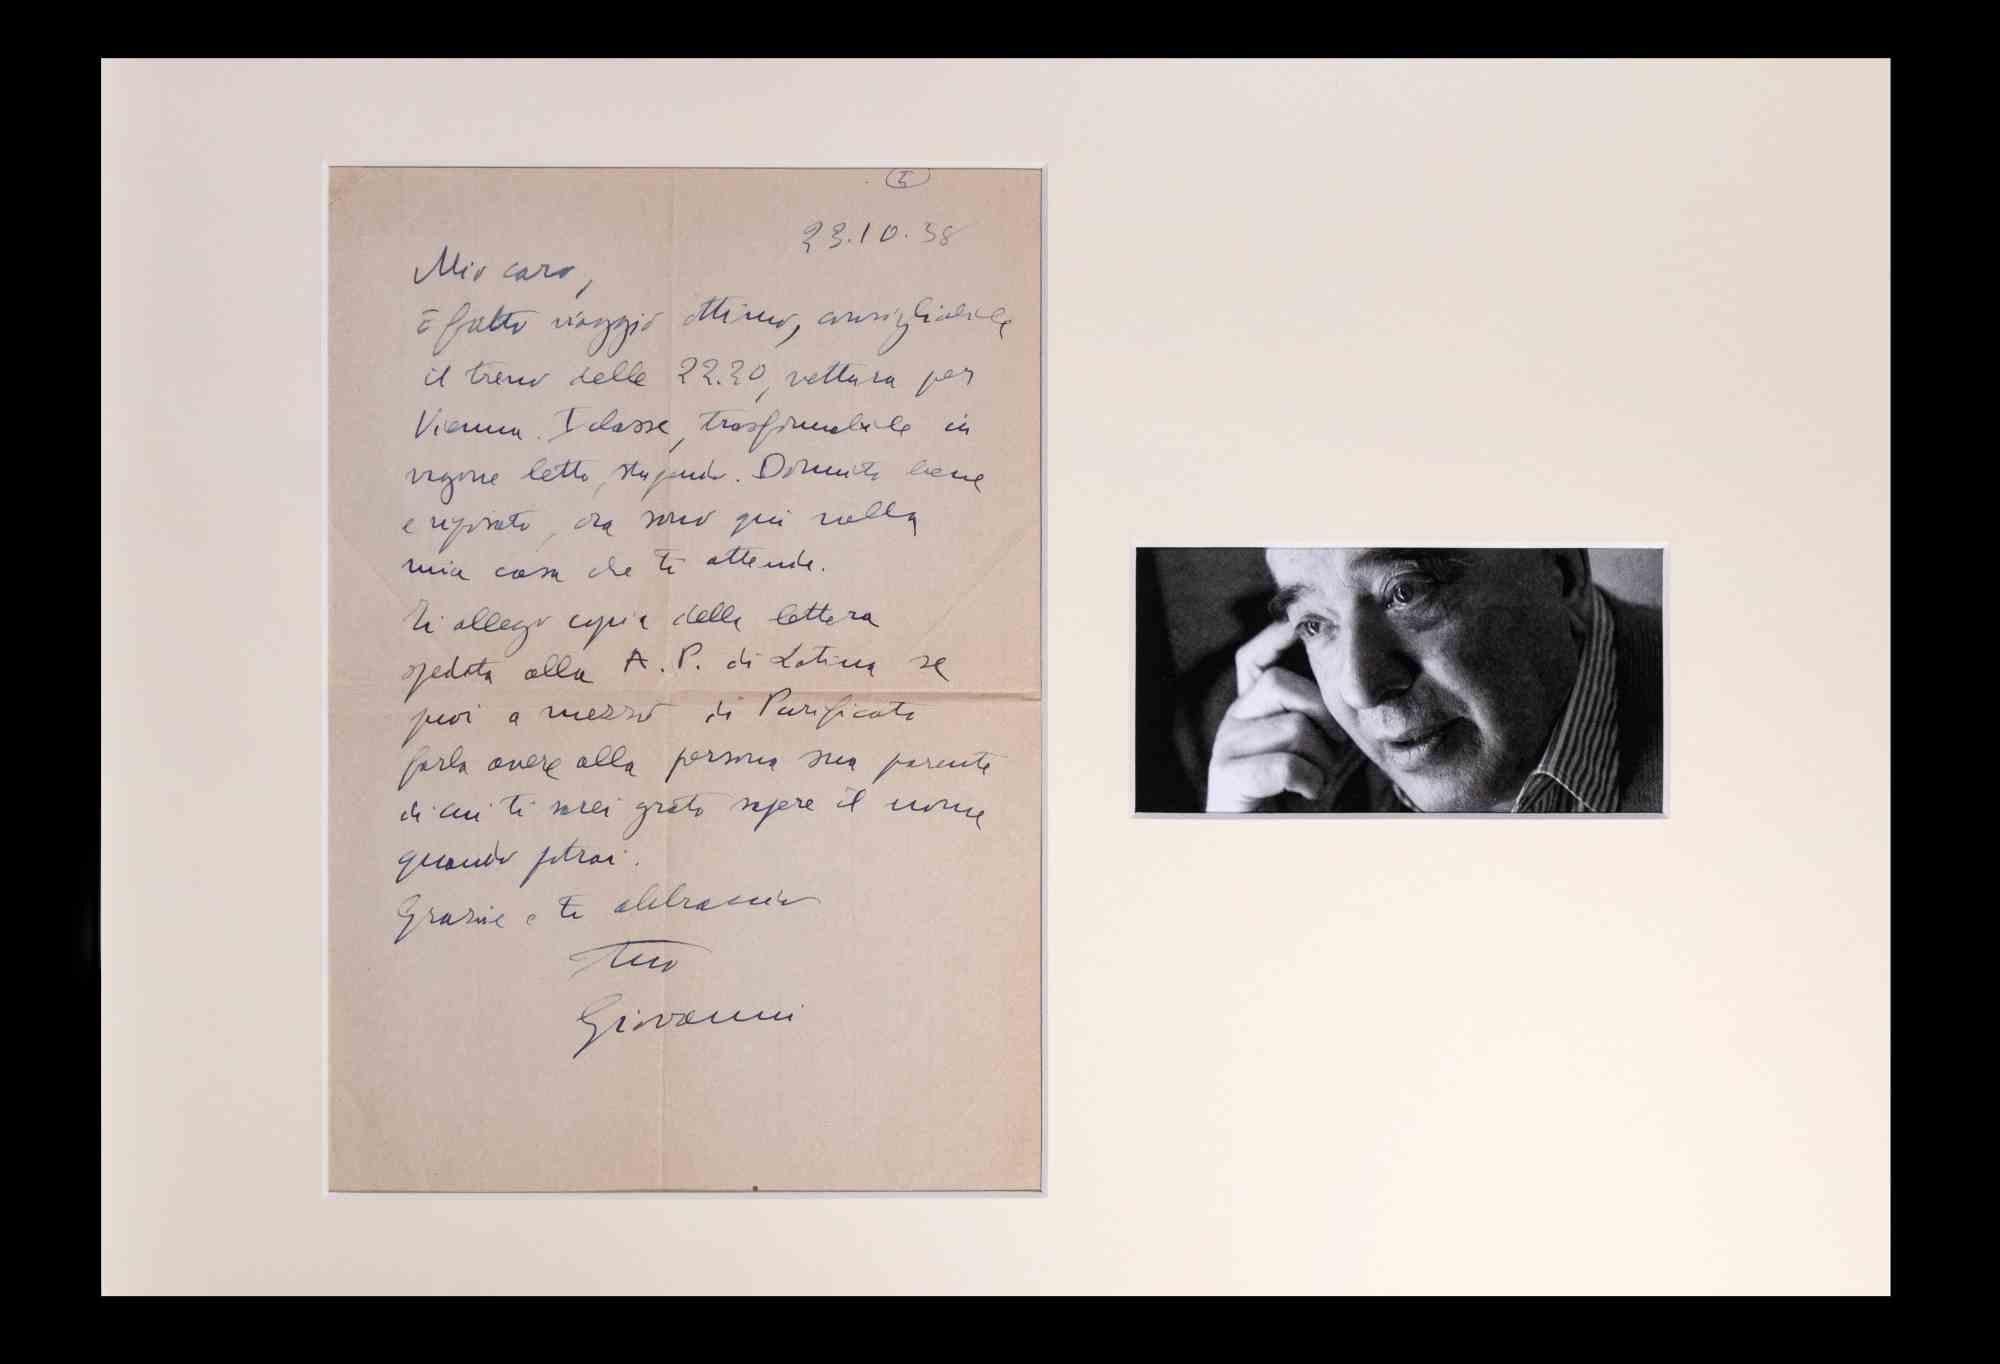 Brief von Giovanni Comisso (1895-1969).

Inhalt des Briefes: Der Schreiber wendet sich wahrscheinlich an einen Freund ("Mein Lieber...") und berichtet von seiner Reise nach Wien mit dem Zug um 22.30 Uhr in der ersten Klasse. Dann bittet er darum,